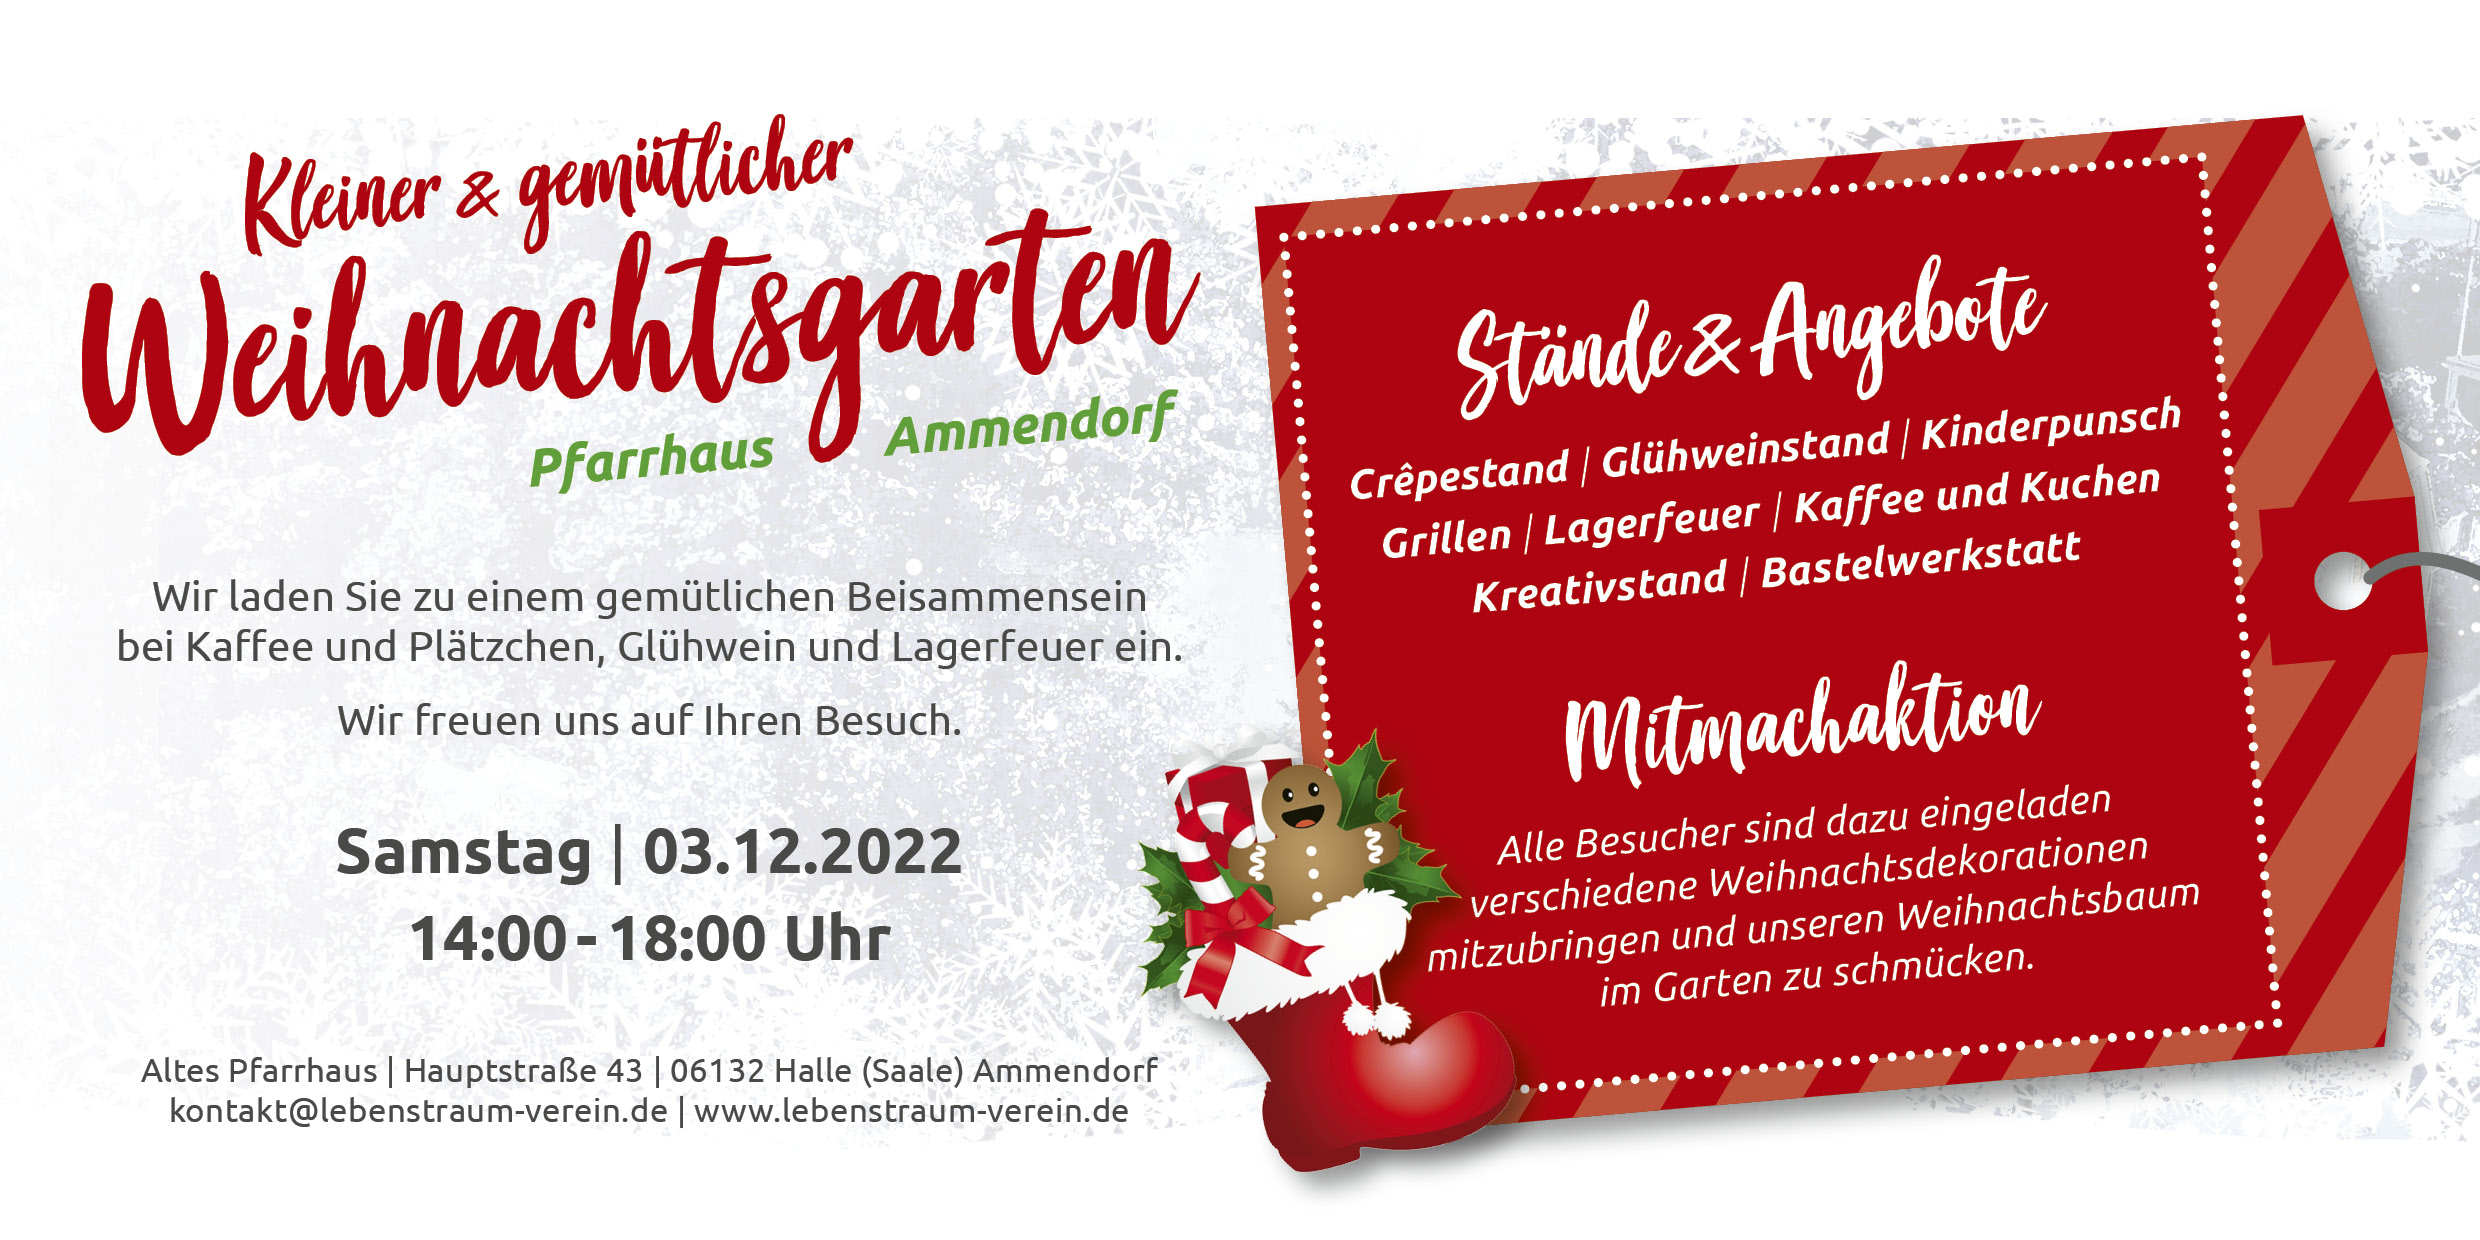 Weihnachtsmarkt im Alten Pfarrhaus Ammendorf am 3. Dezember 2022